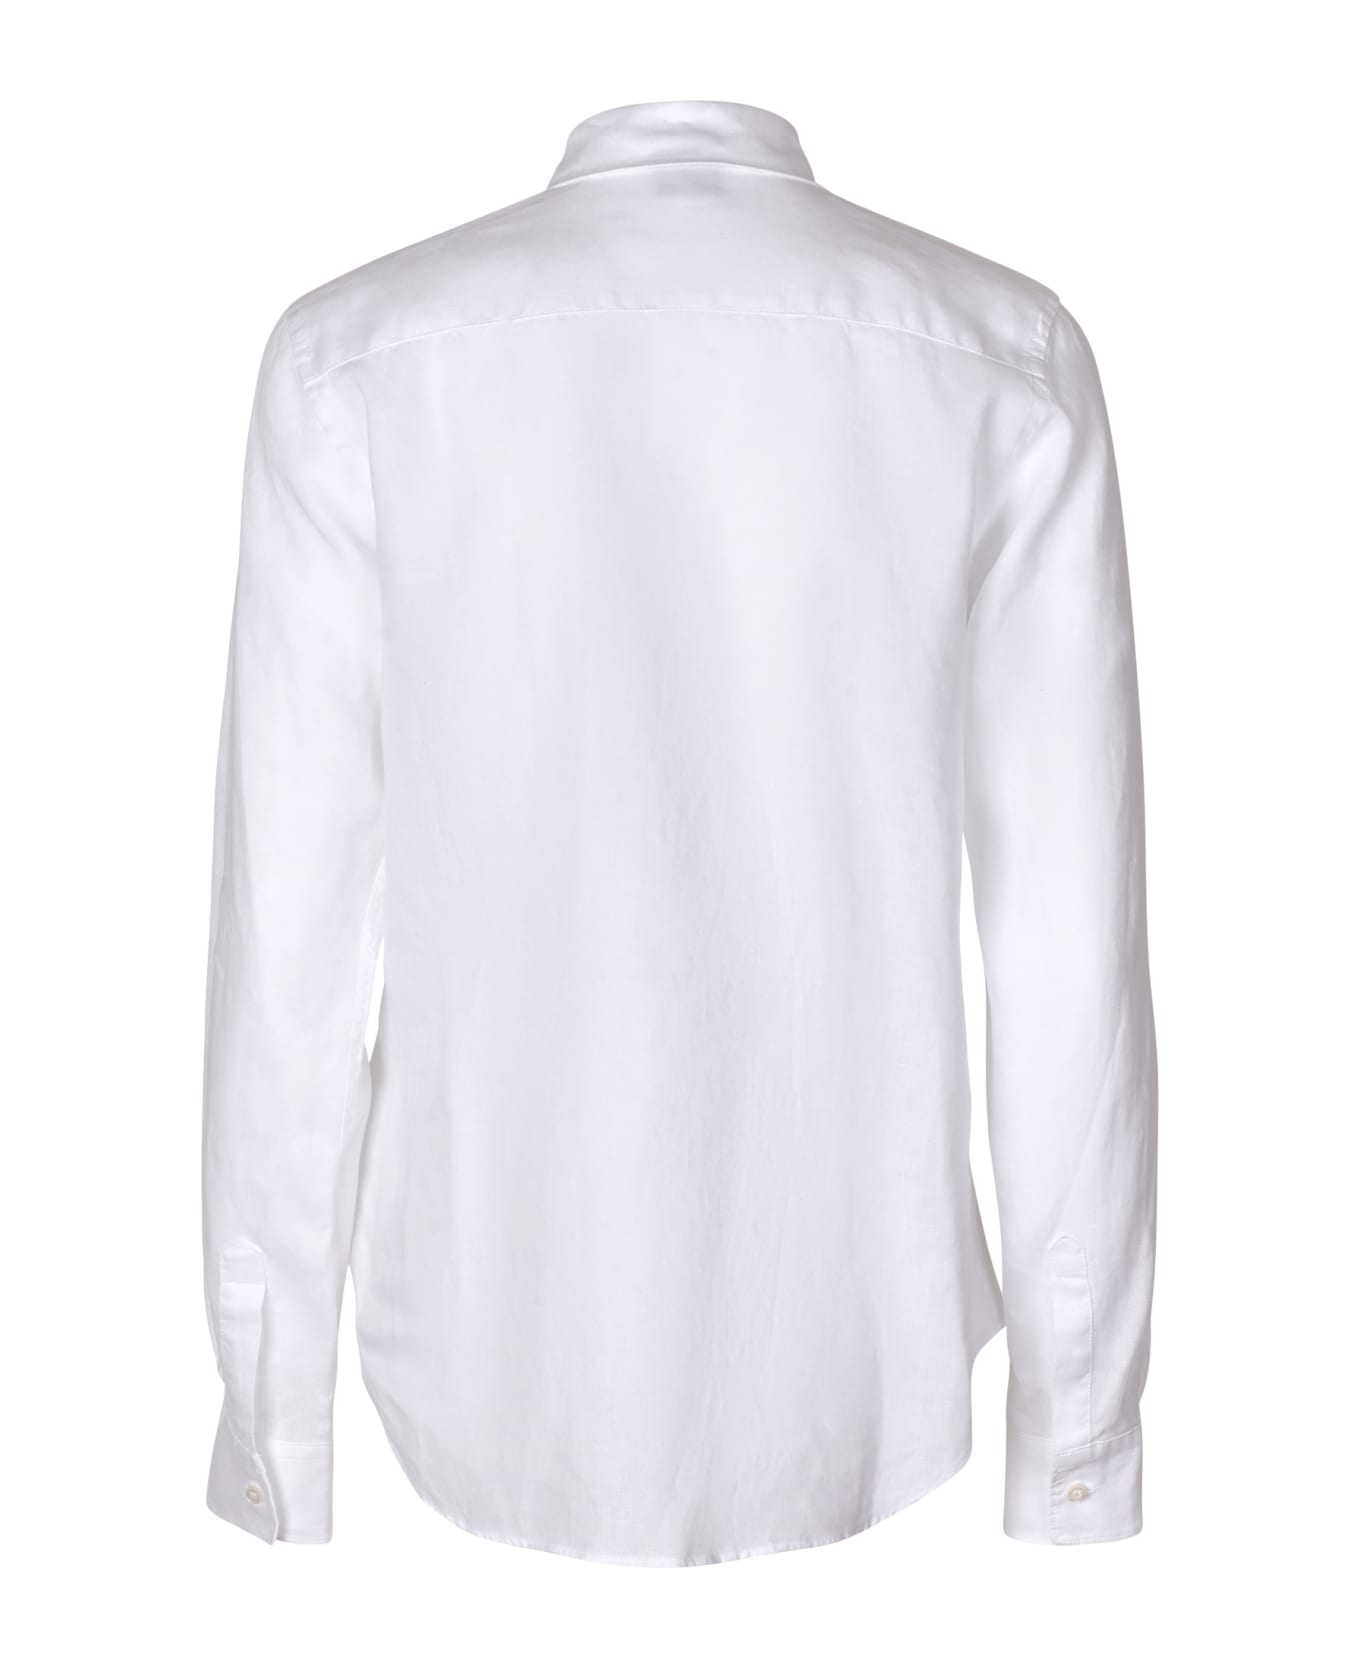 Aspesi White Long-sleeved Shirt - White シャツ